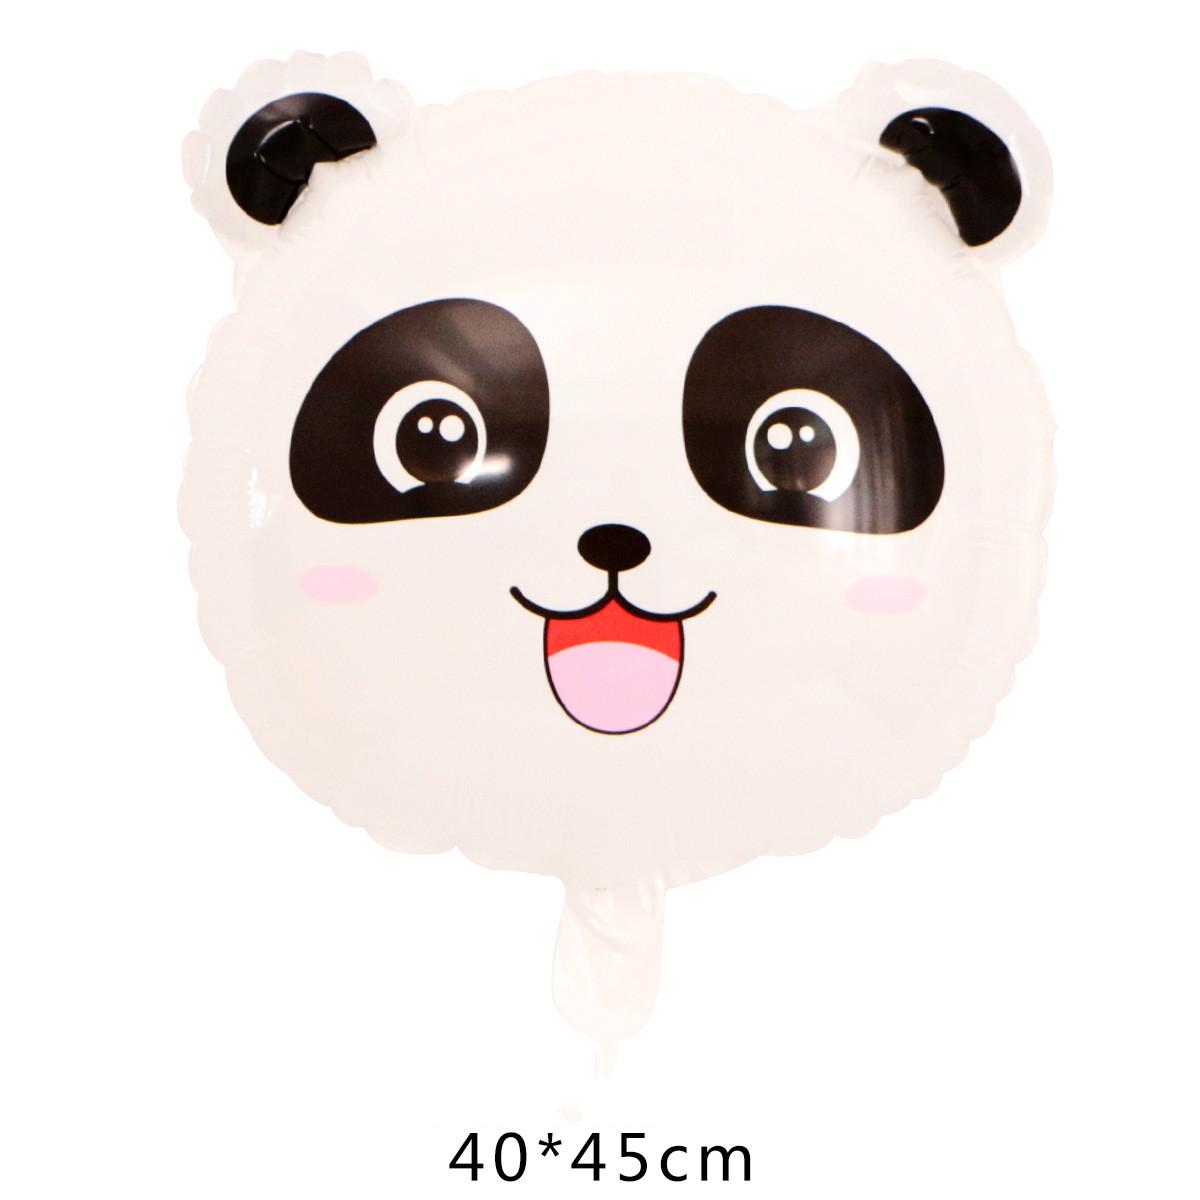 1 cái Phim hoạt hình Panda Foil Bong bóng Hoạt hình Động vật 18 inch & 76x49cm Bong bóng Panda Trang trí tiệc sinh nhật Globos Đồ chơi bơm hơi cho trẻ em